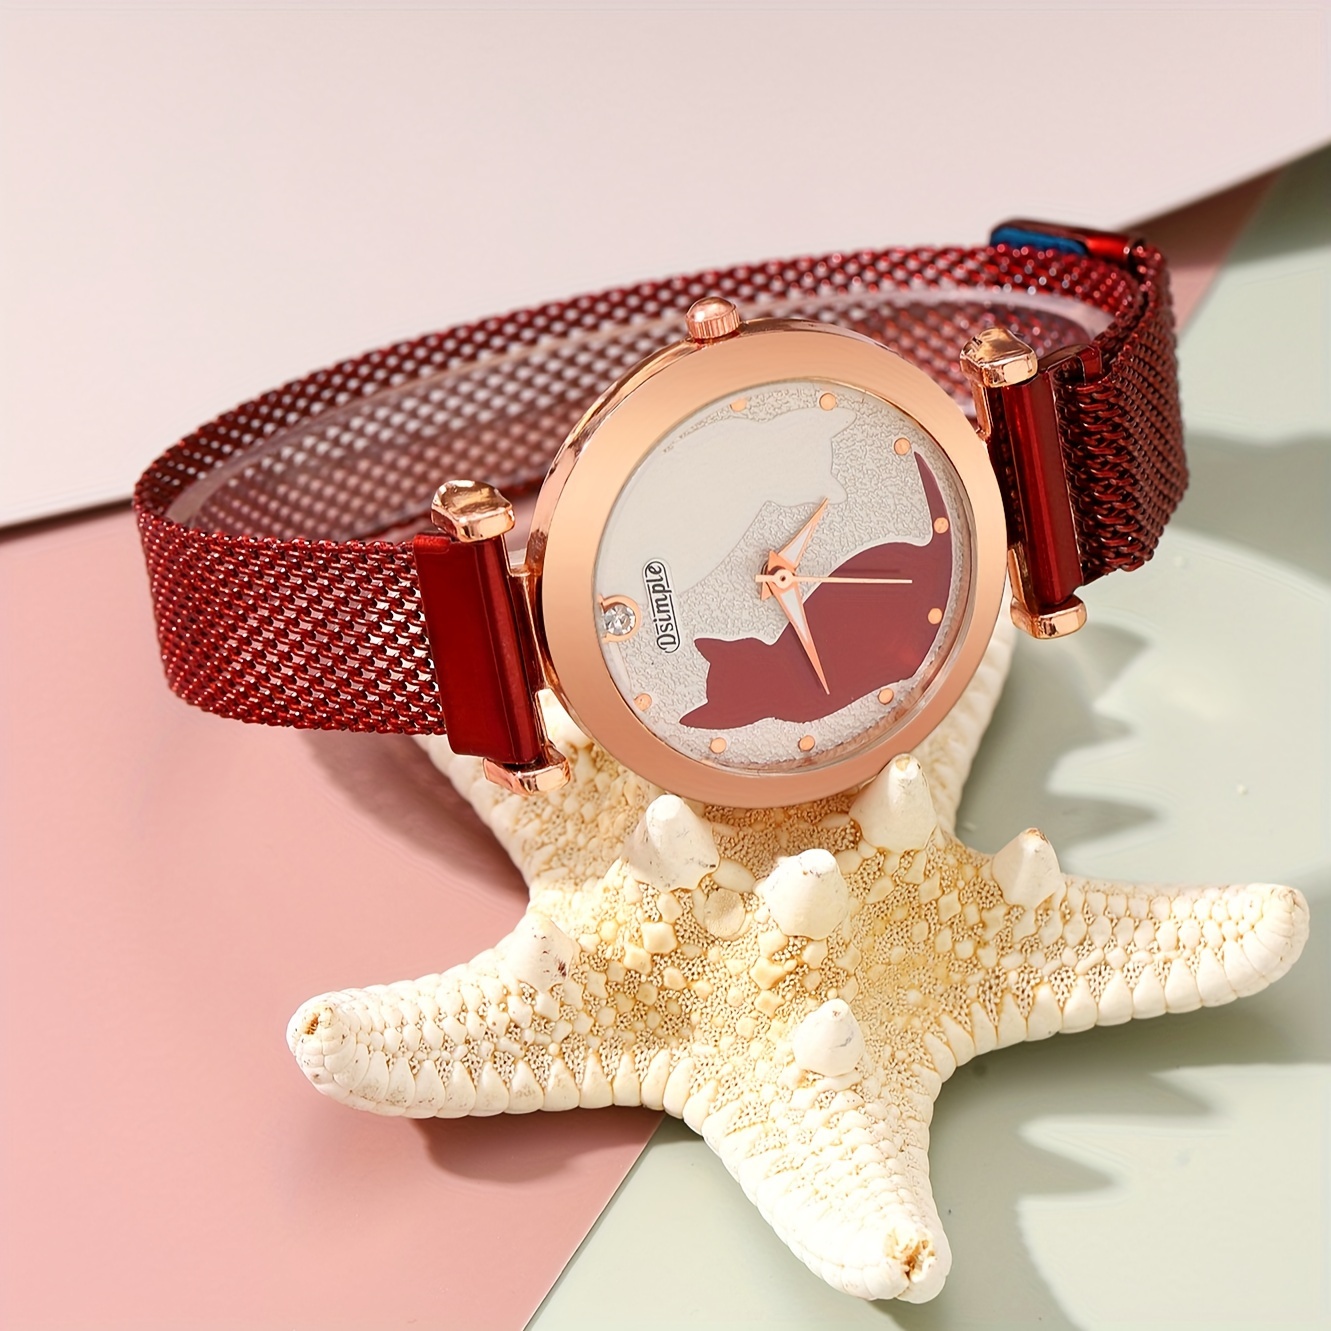 Reloj de Lujo con Pulsera para Mujer - Reloj de Pulsera de Cuarzo Correa  Magnética Rojo